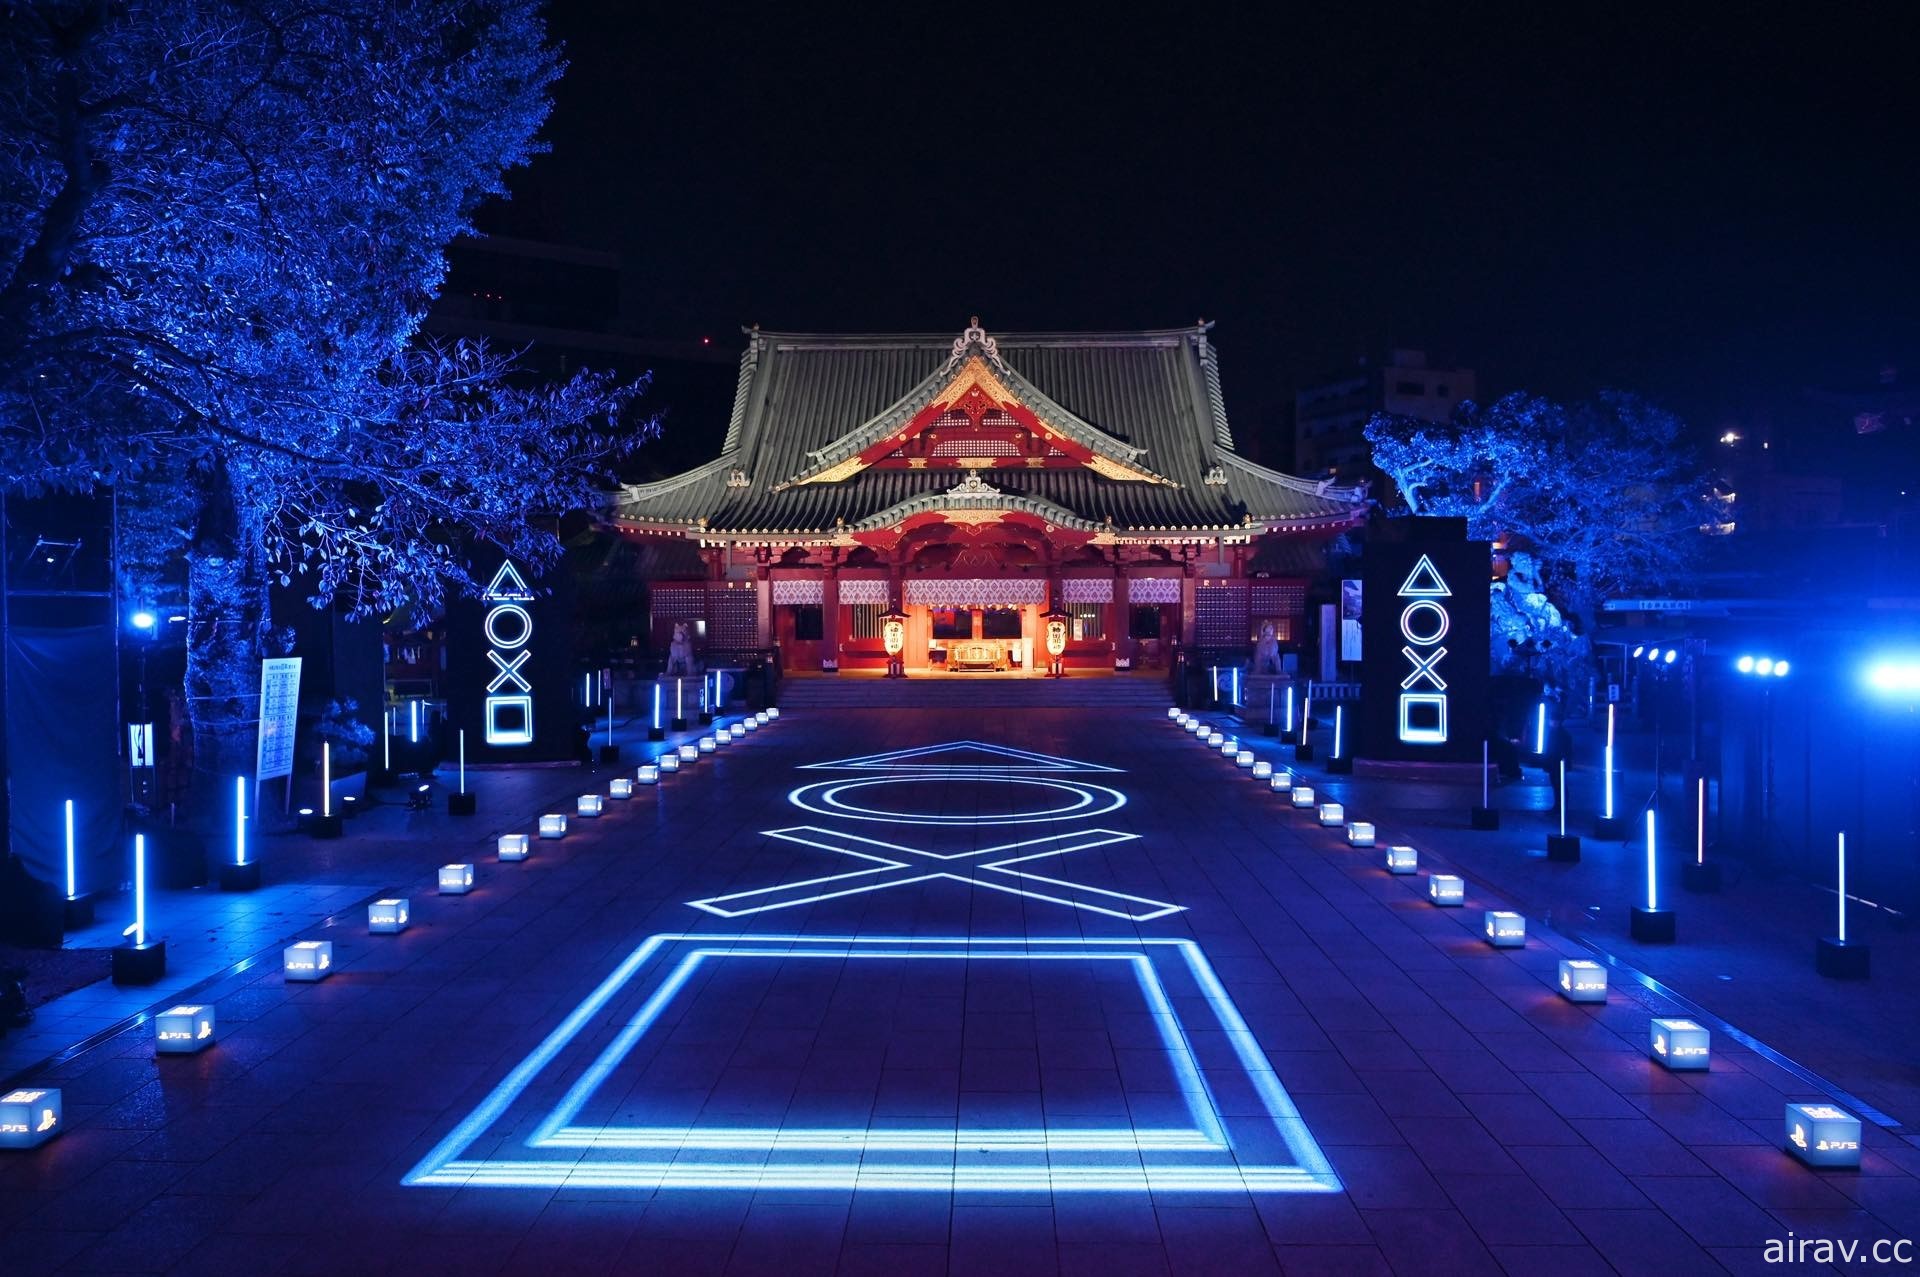 紀念 PS5 發售！日本 SIE 於秋葉原神田明神神社驚喜舉辦燈光秀活動